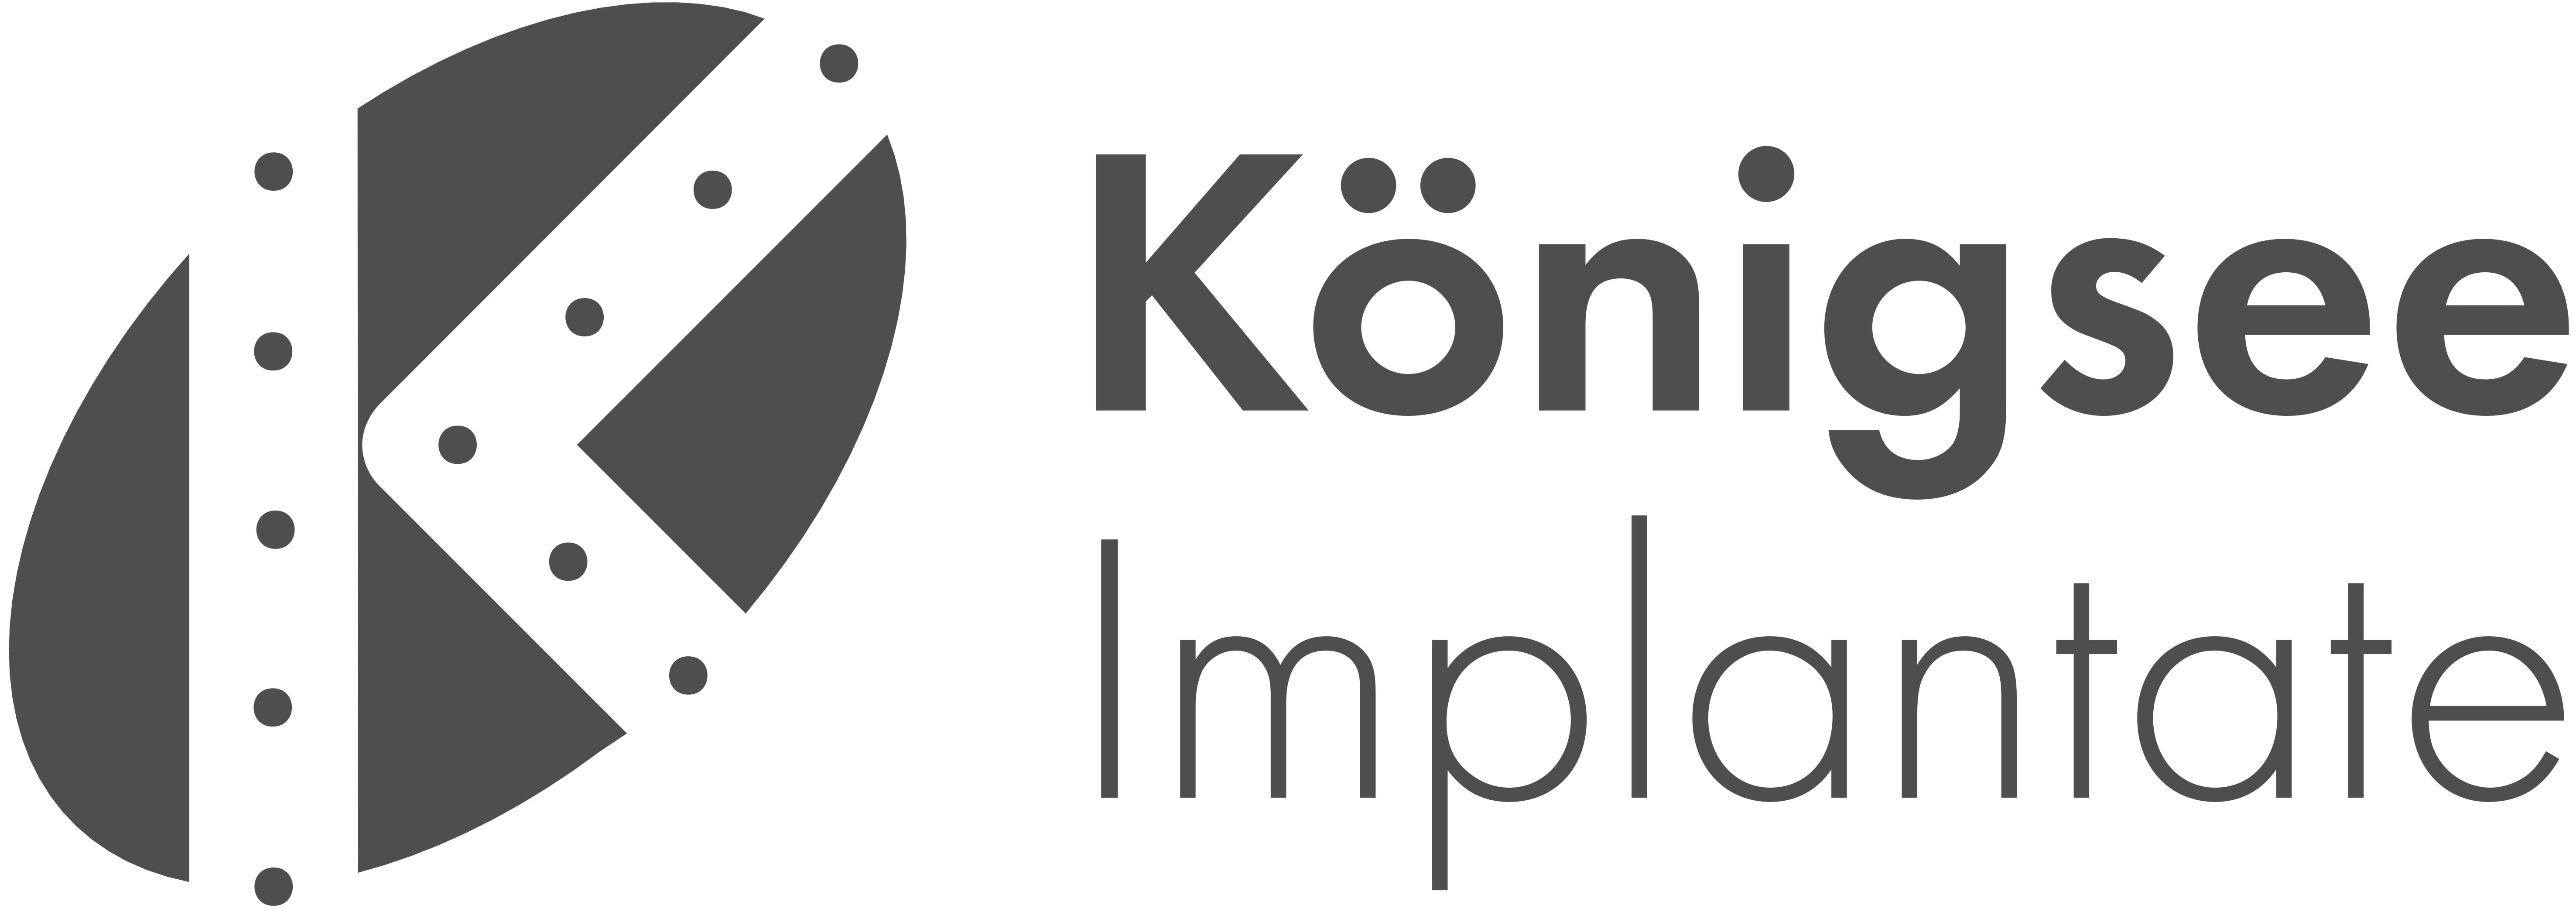 Königsee Implantate GmbH